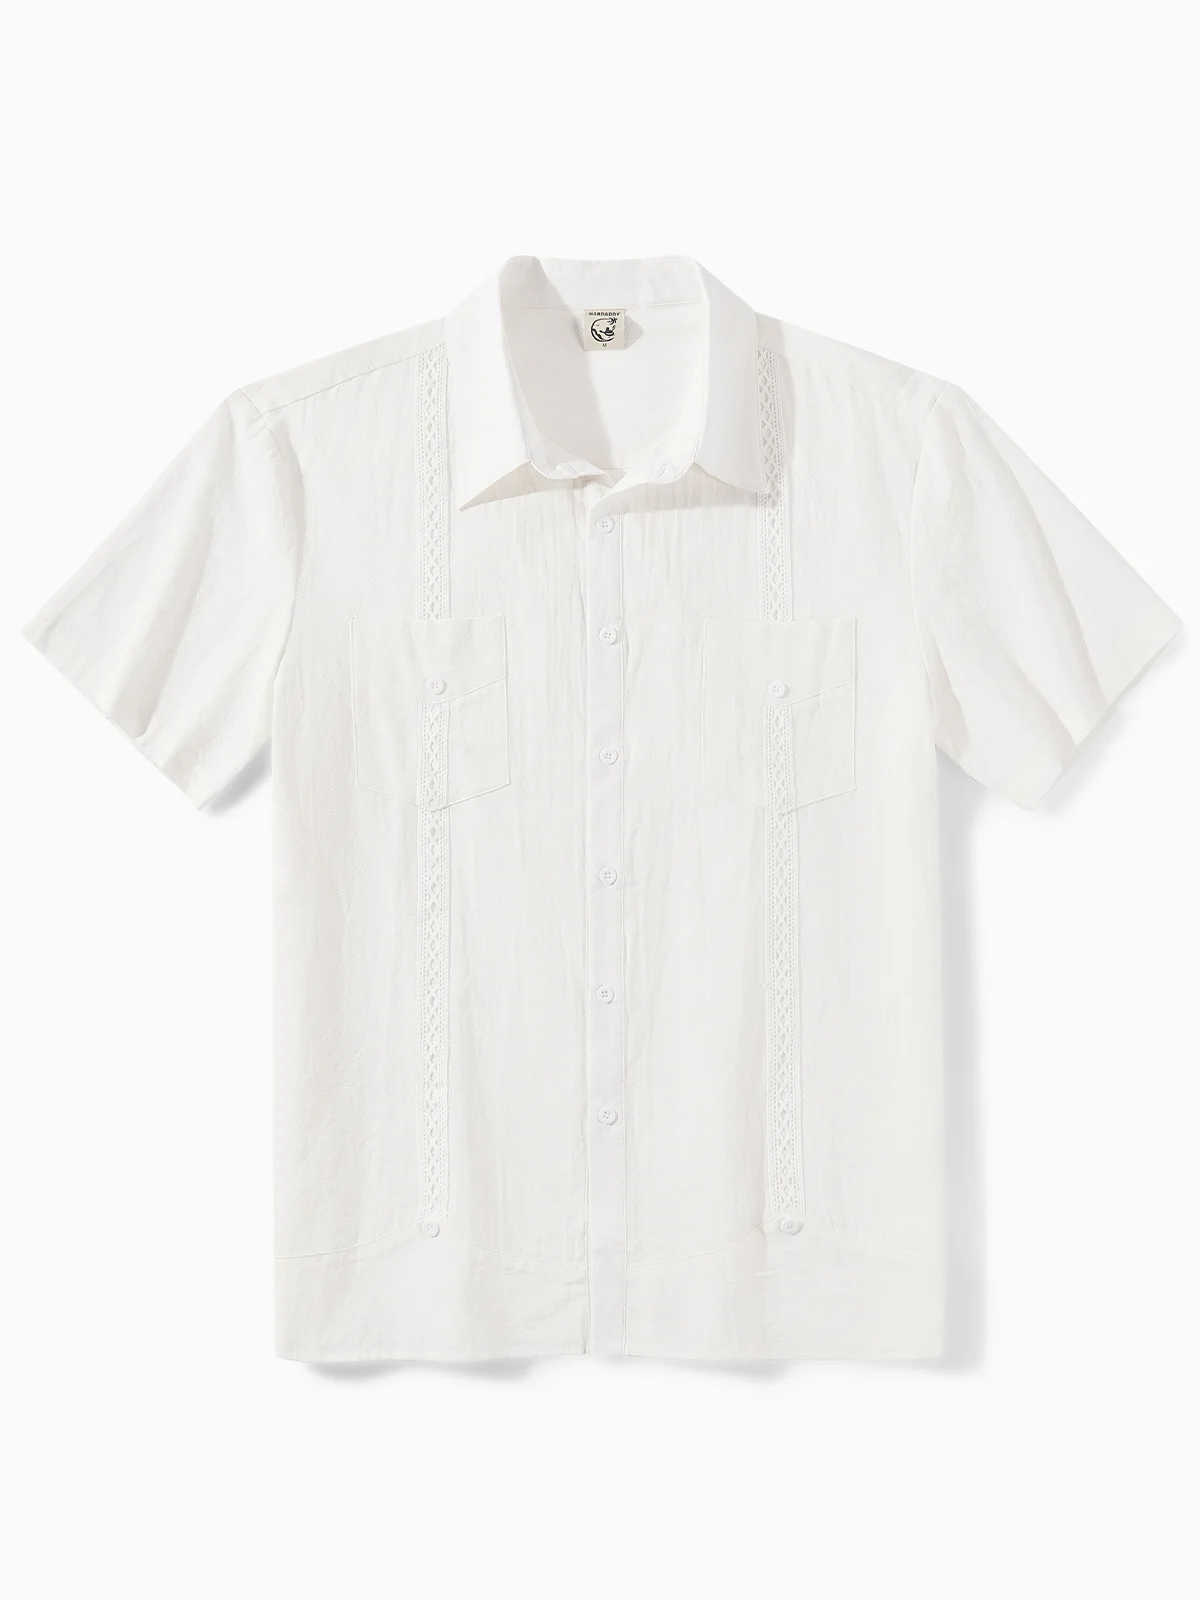 Hardaddy® Cotton Plain Guayabera Shirt